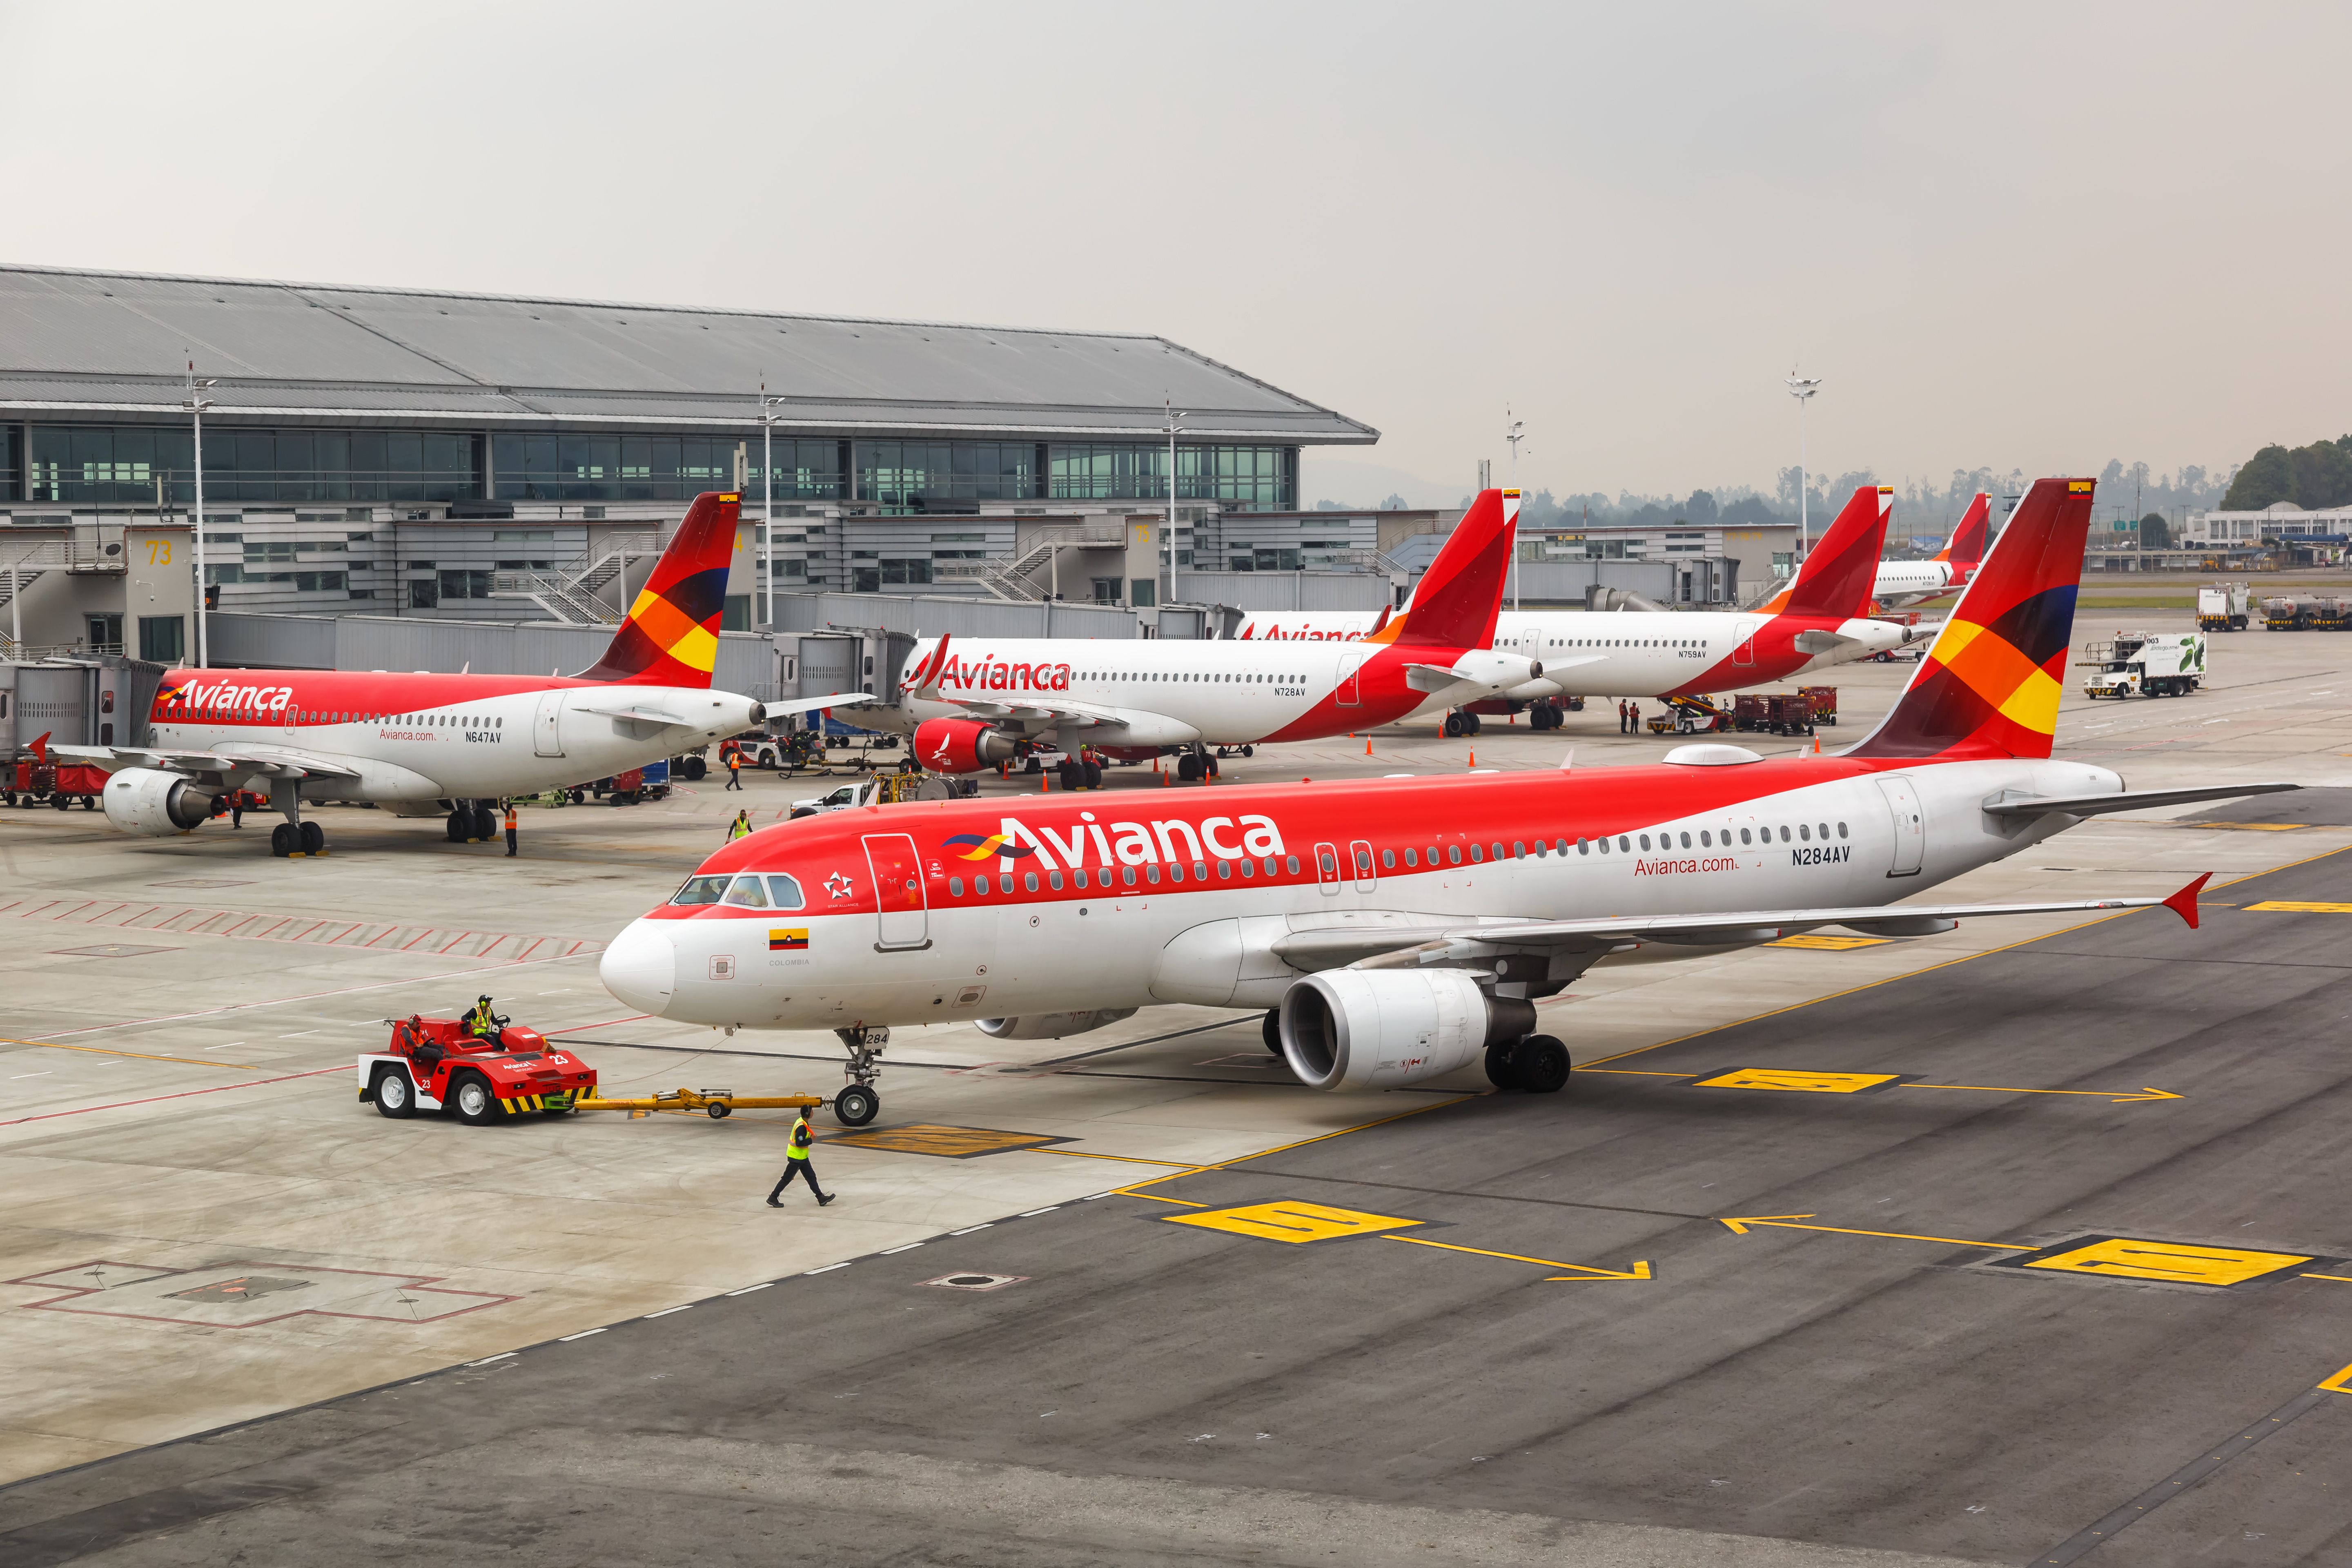 Several Avianca aircraft parked in El Dorado International Airport